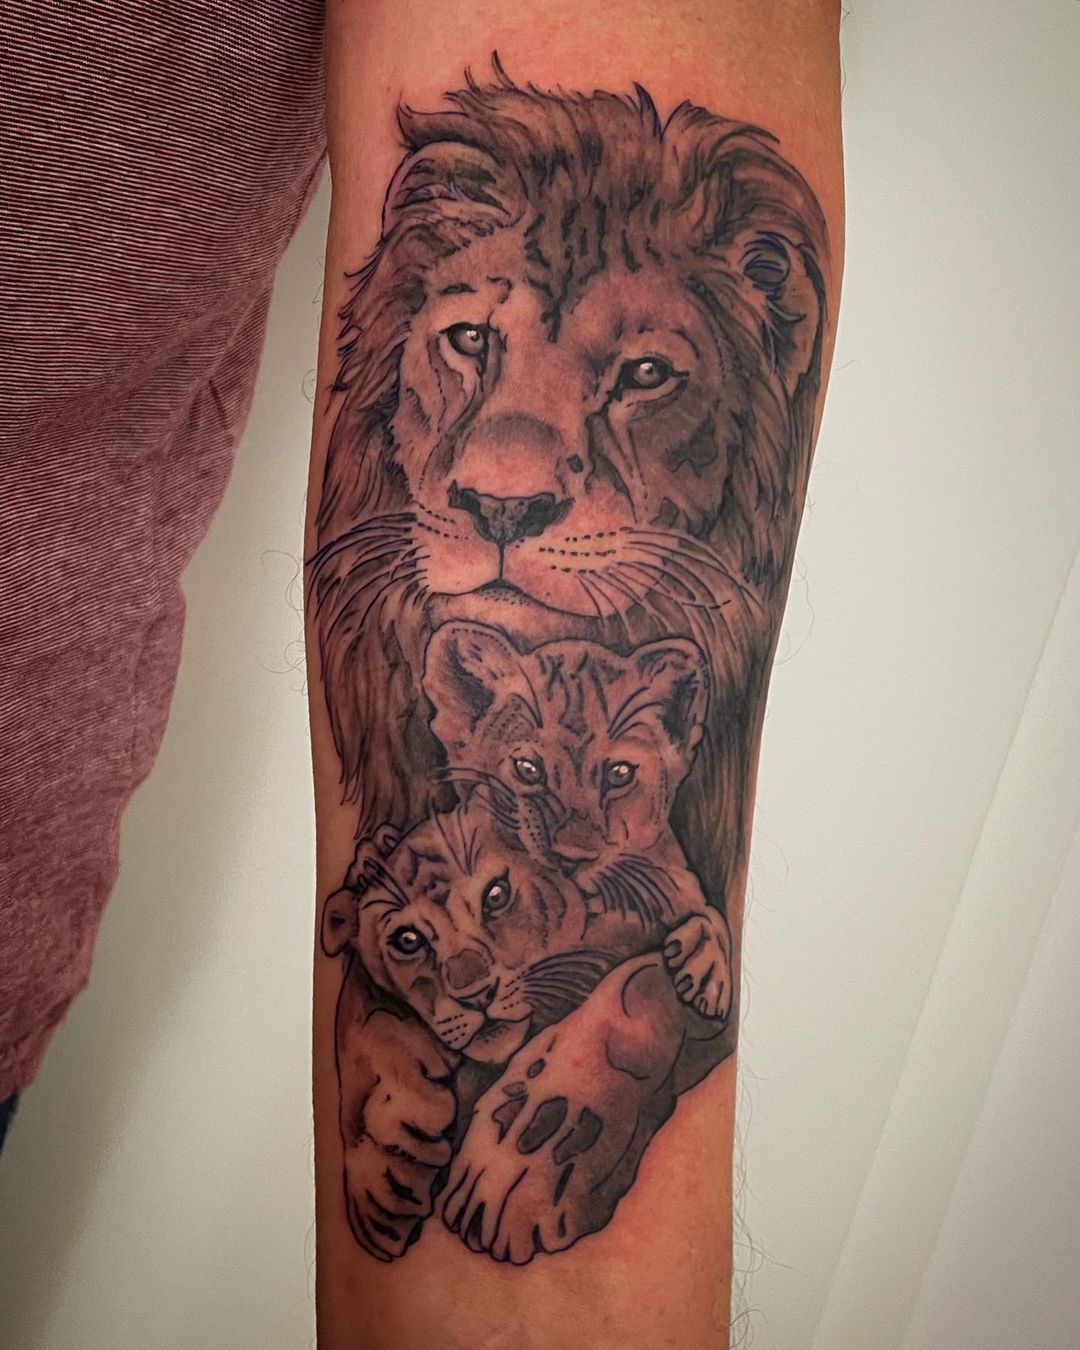 Löwenfamilie  
•
•
•
#inked #ink #lion #liontattoo #tattoos #tattoo #tattooideas